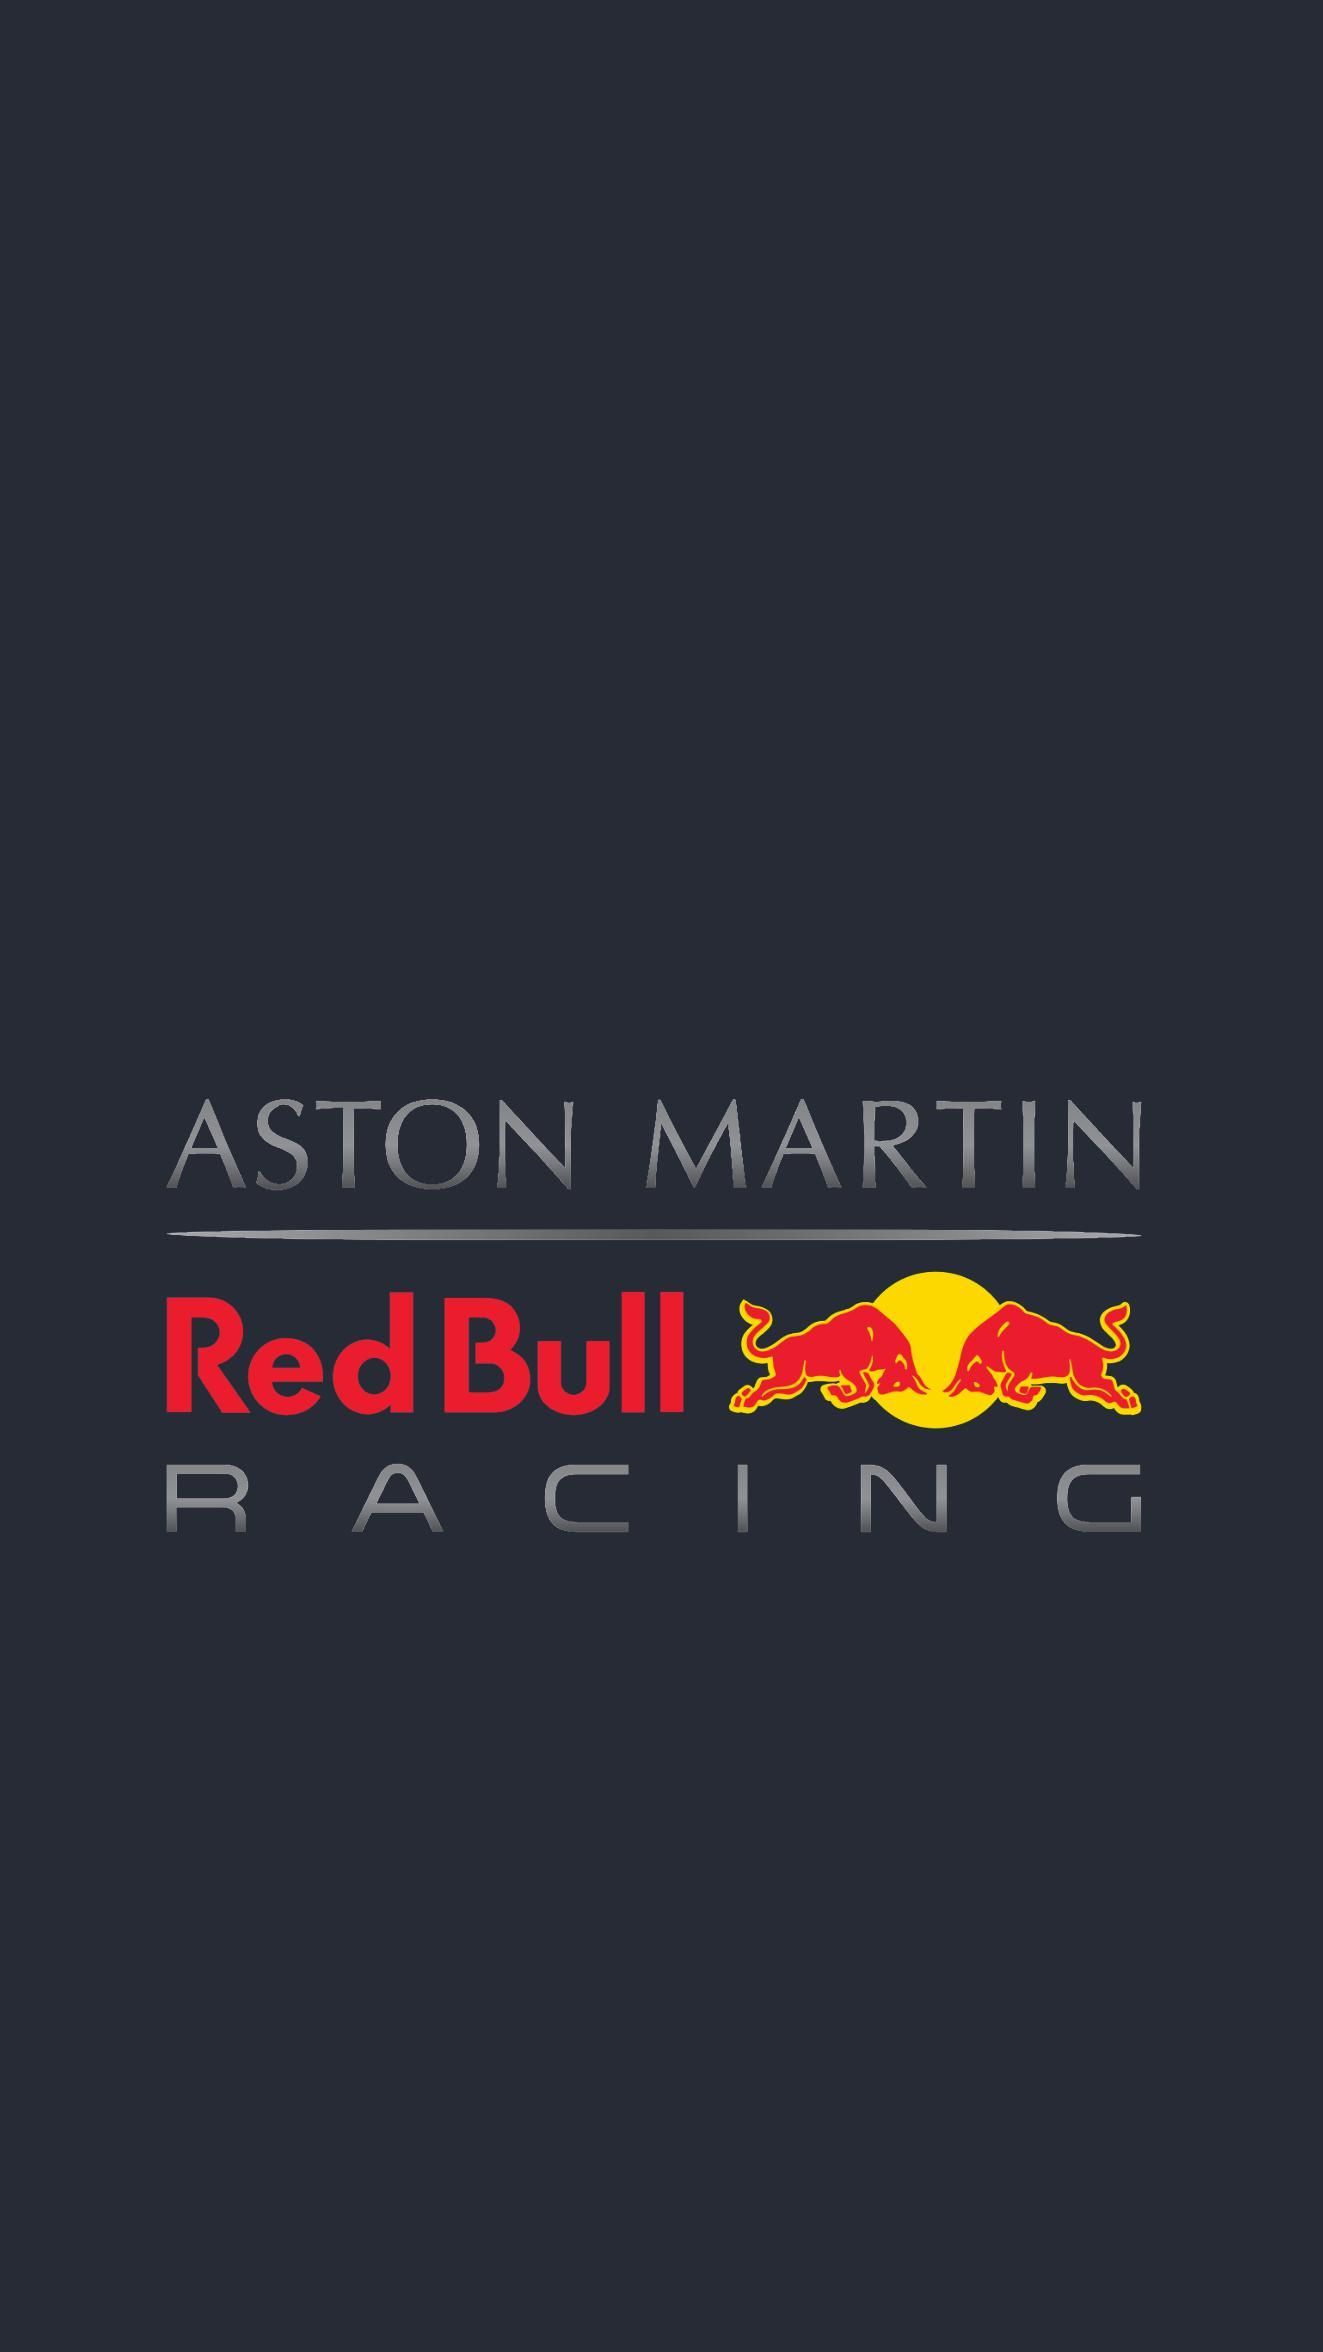 Aston Martin Red Bull Racing wallpaper color. Fondos de pantalla